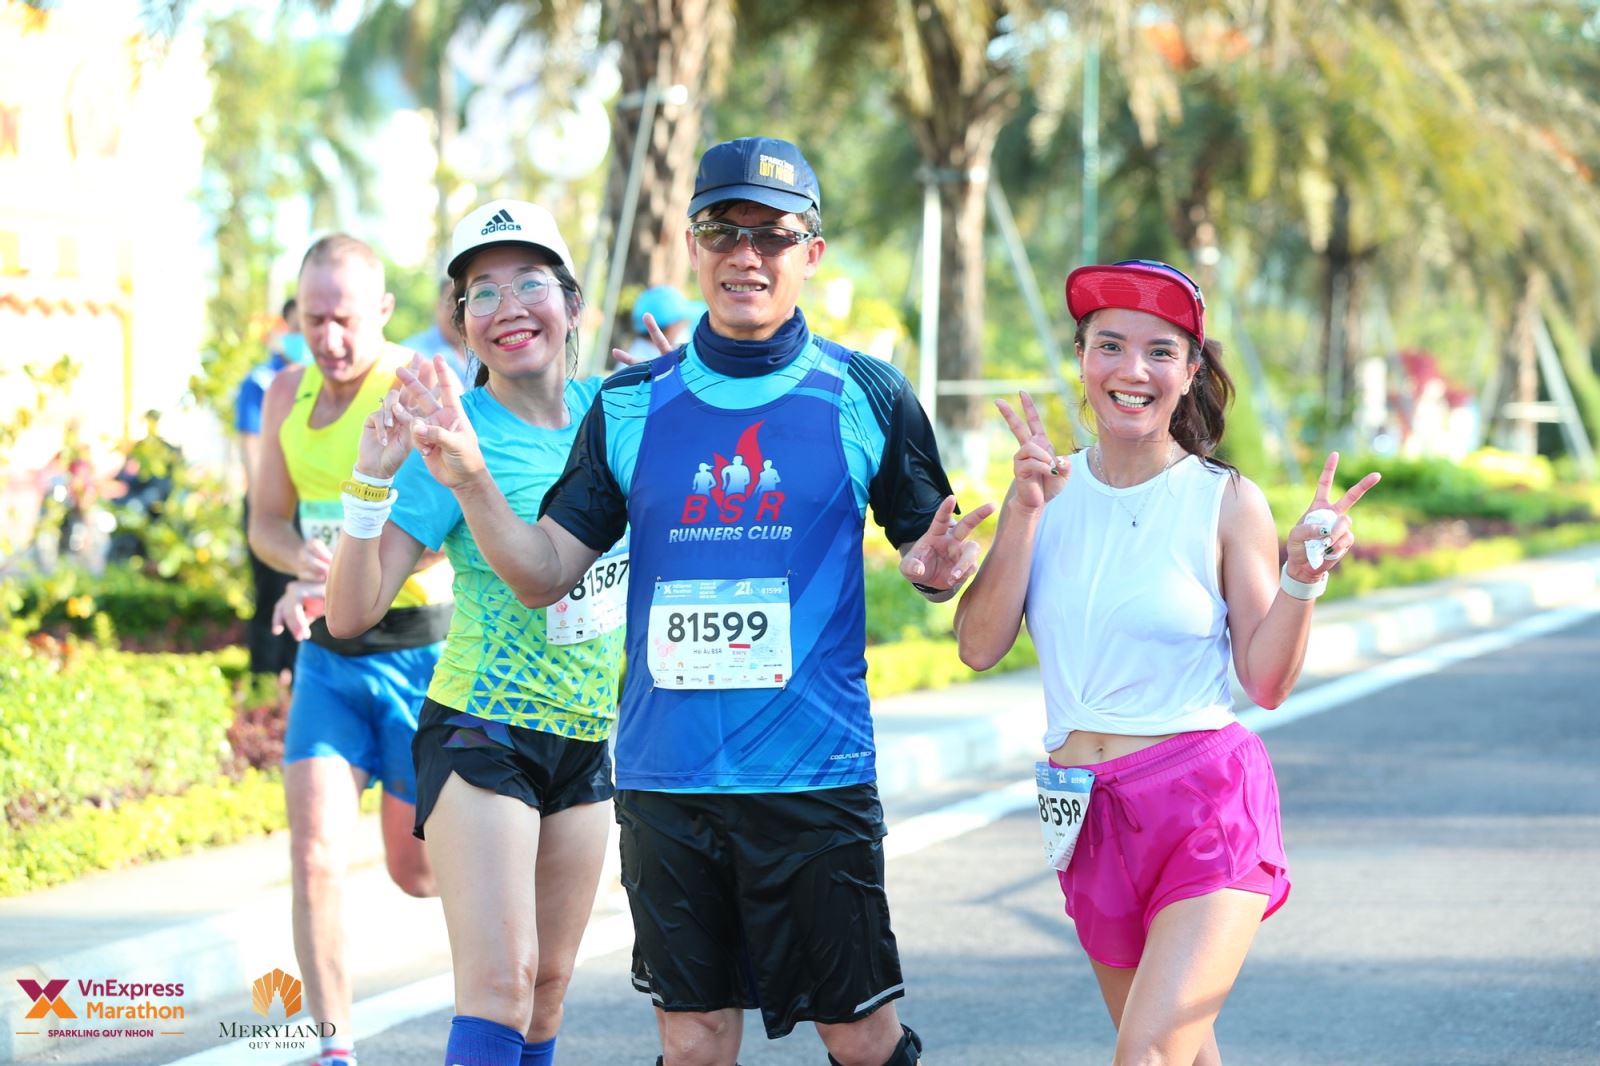 Chùm ảnh: Khoảnh khắc đẹp của runner BSR tham dự giải VnExpress Marathon Quy Nhơn 2022